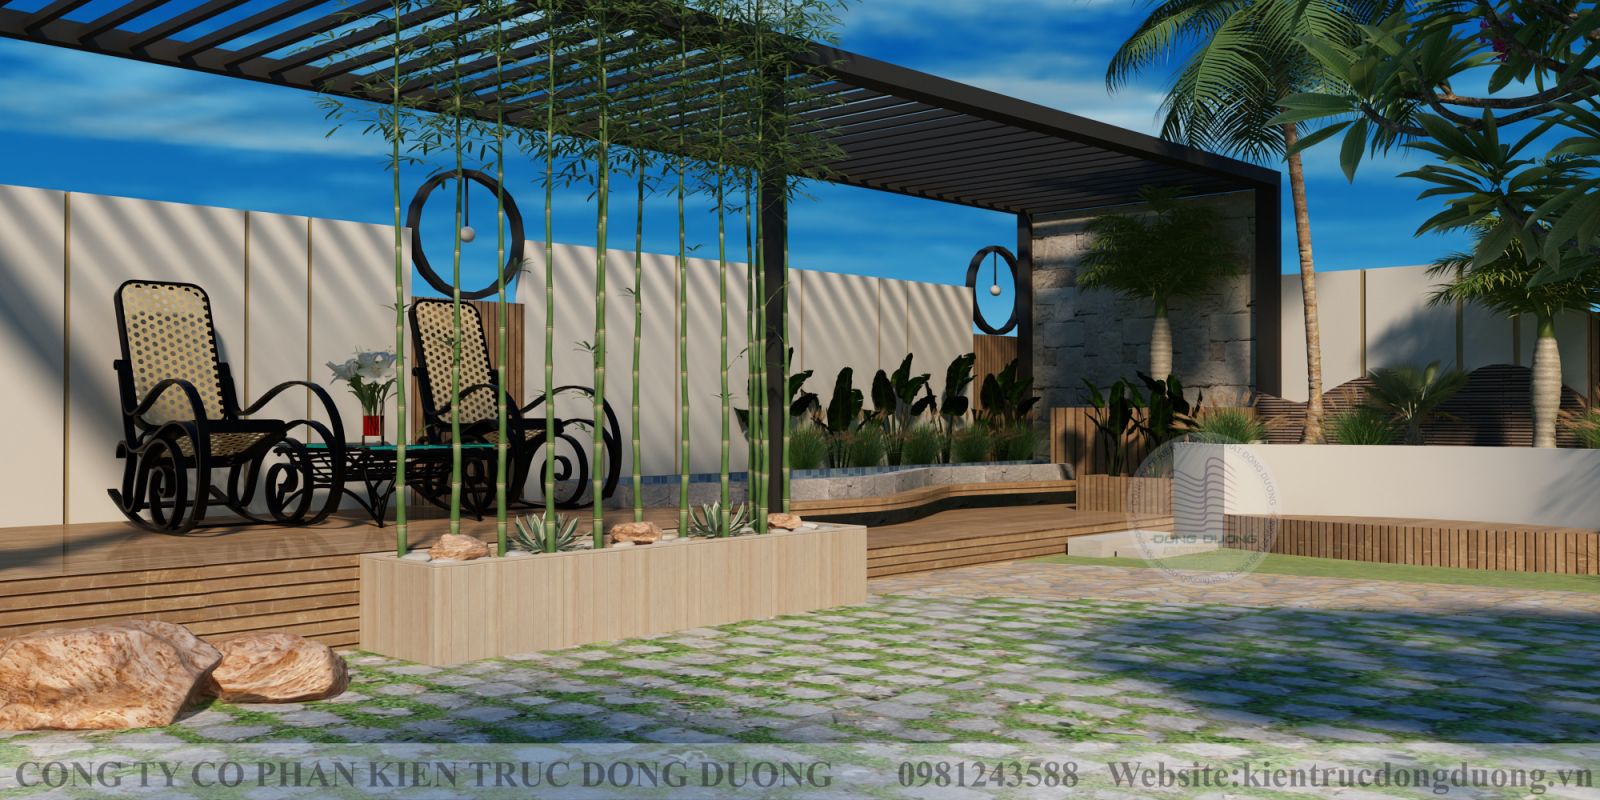 Thiết kế sân vườn Biệt thự vườn 3 tầng 100m2 phong cách hiện đại đẹp